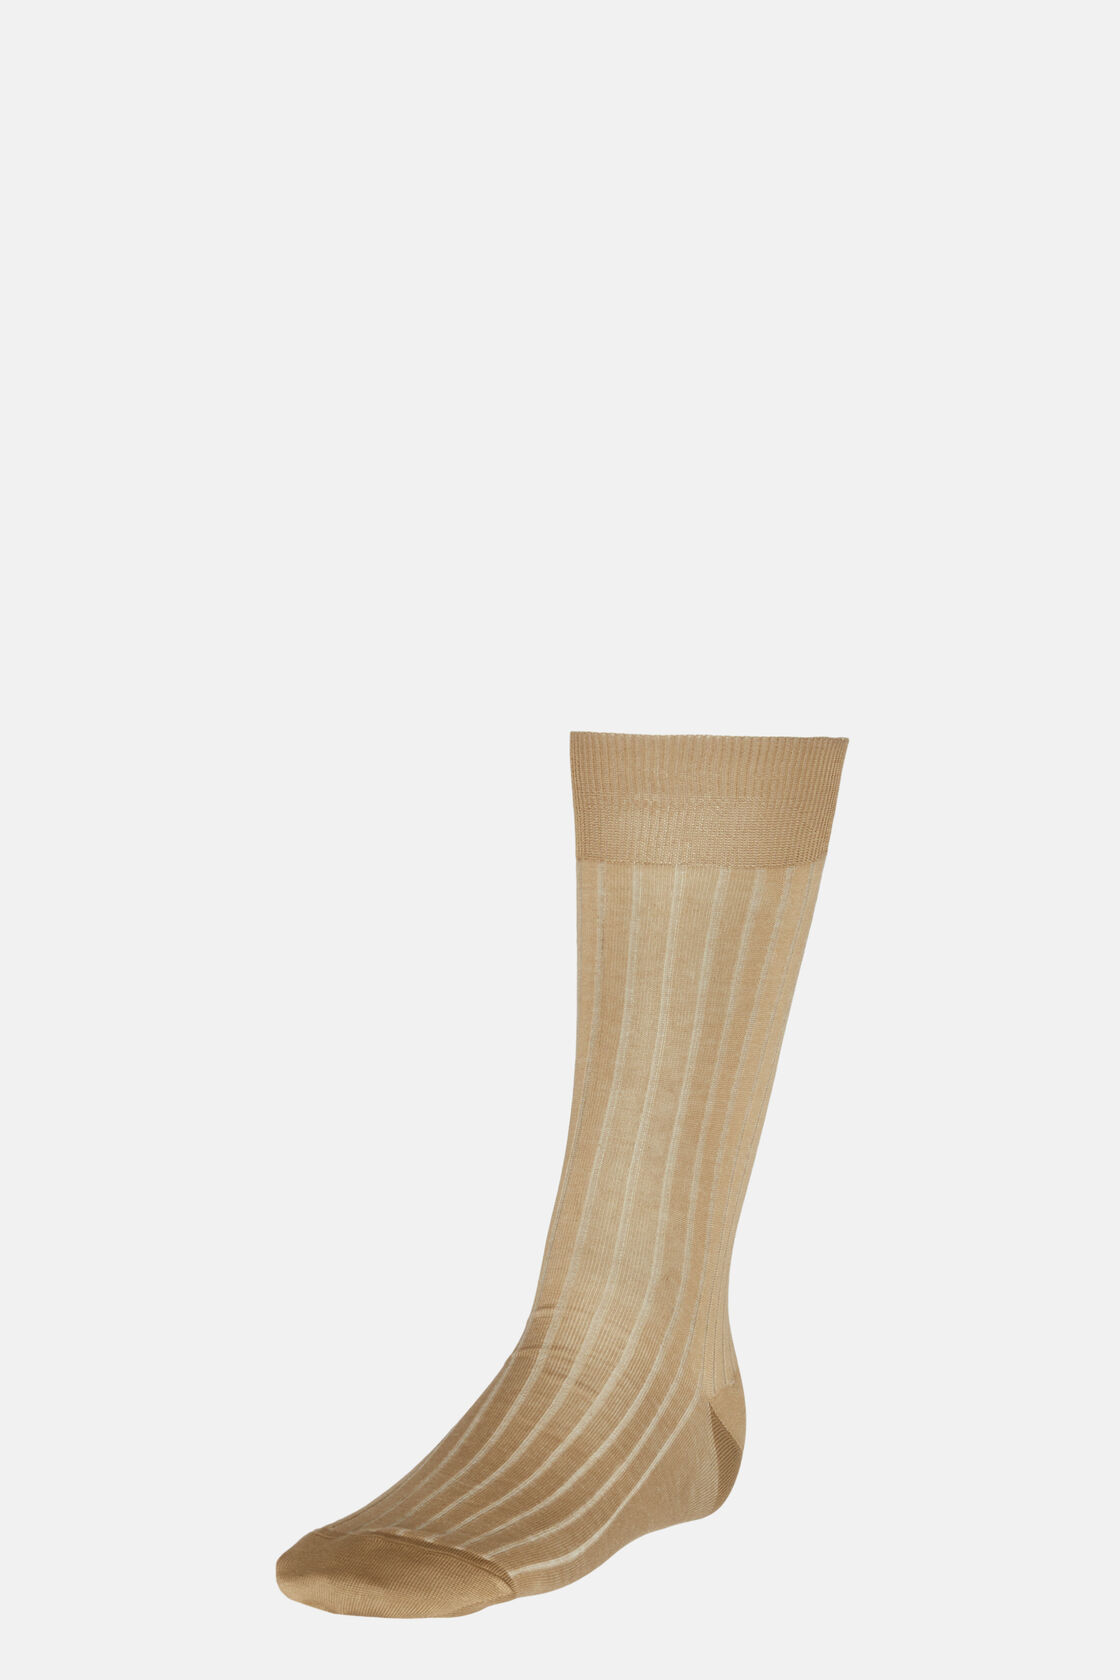 Βαμβακερές μερσεριζέ κάλτσες με πλέξη ριπ, Beige, hi-res